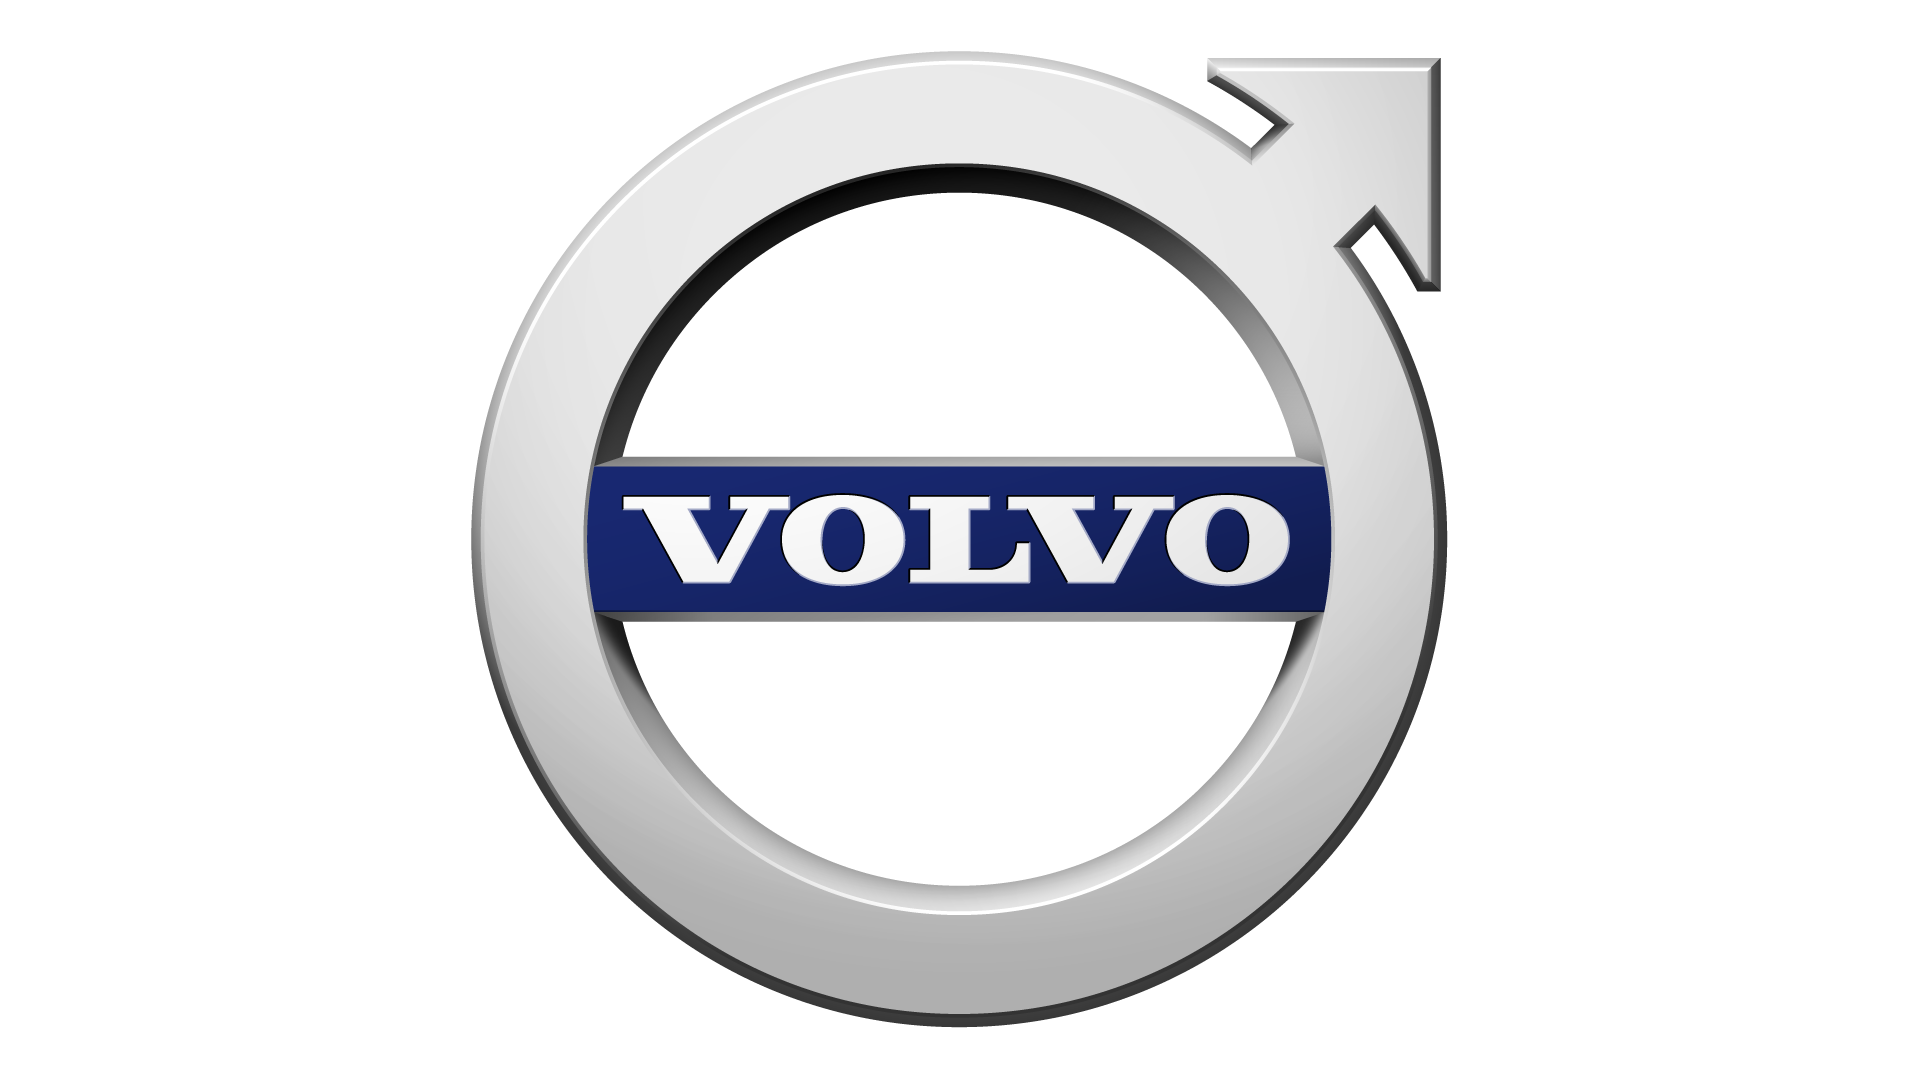 Η μεγαλύτερη παράταξη Volvo στον κόσμο και για καλό σκοπό!